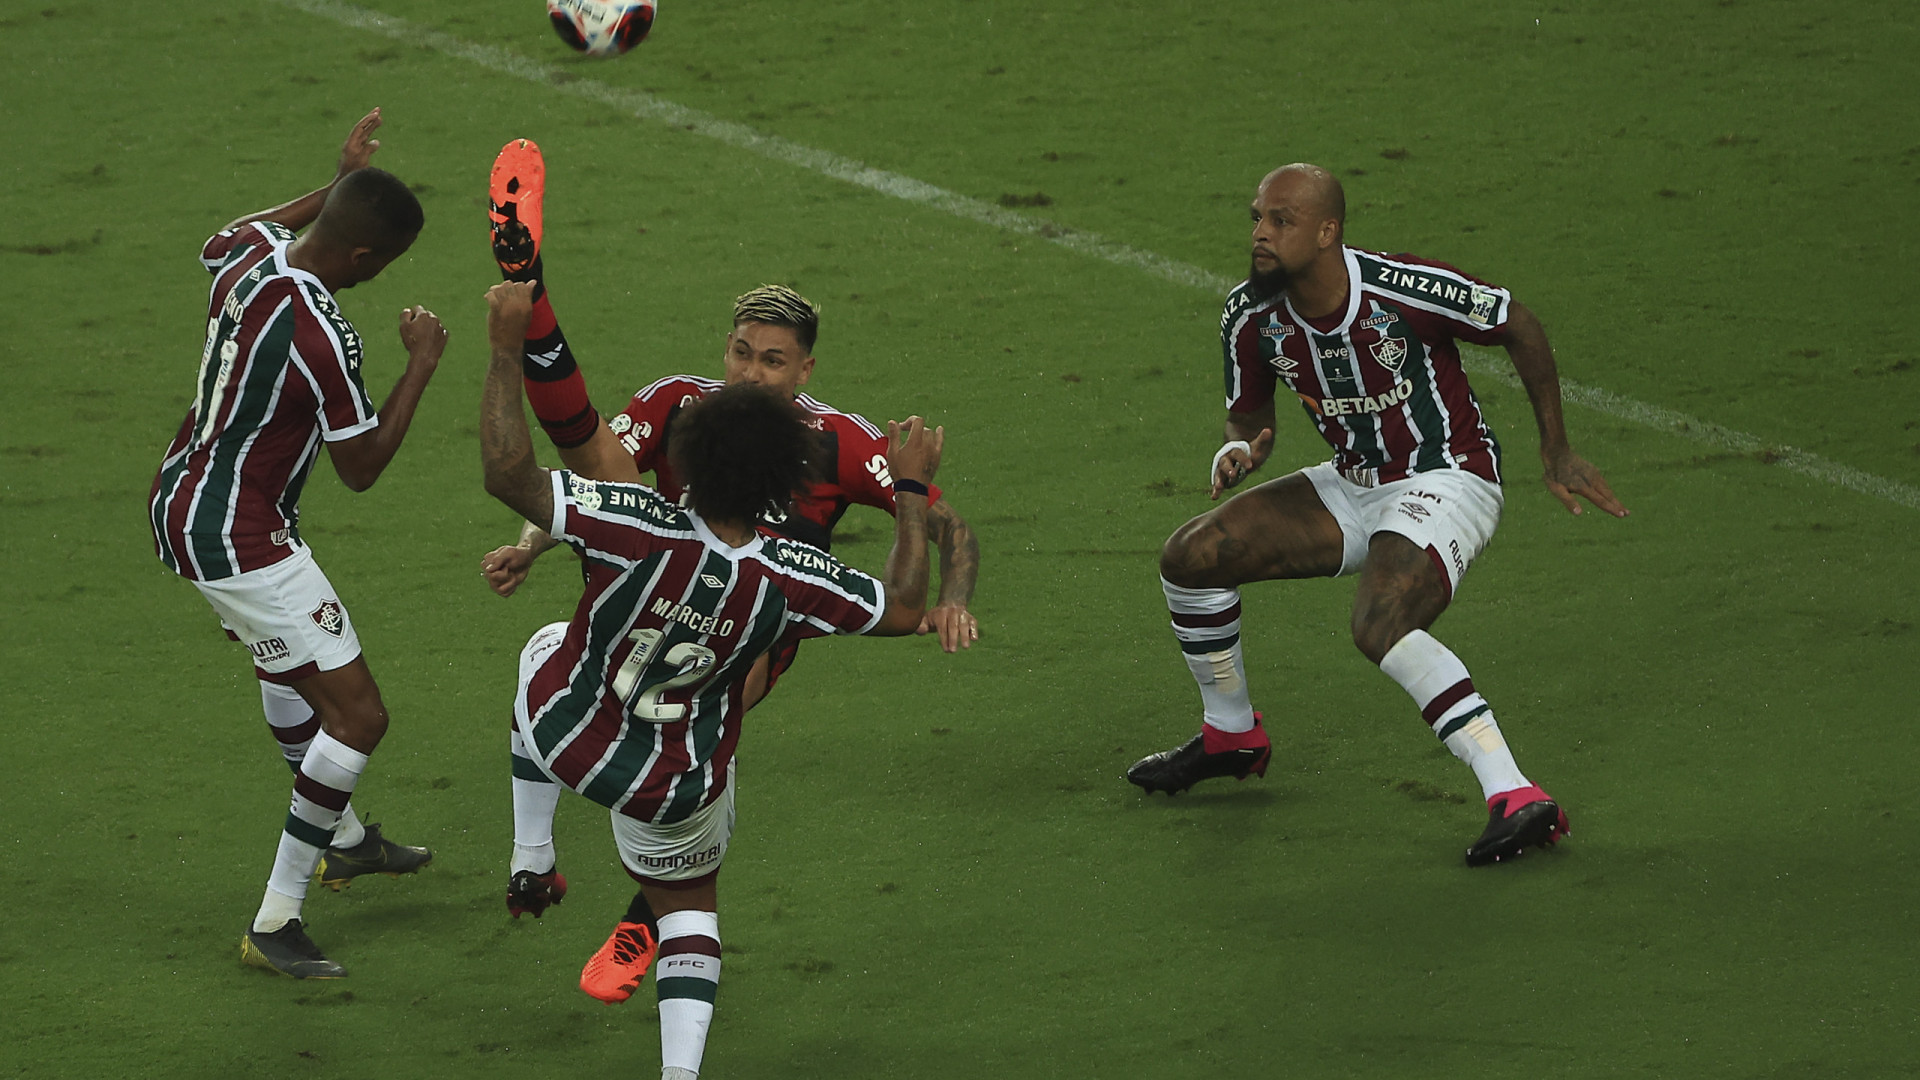 Vítor Pereira humilhado. Fluminense goleia Flamengo e conquista o Carioca